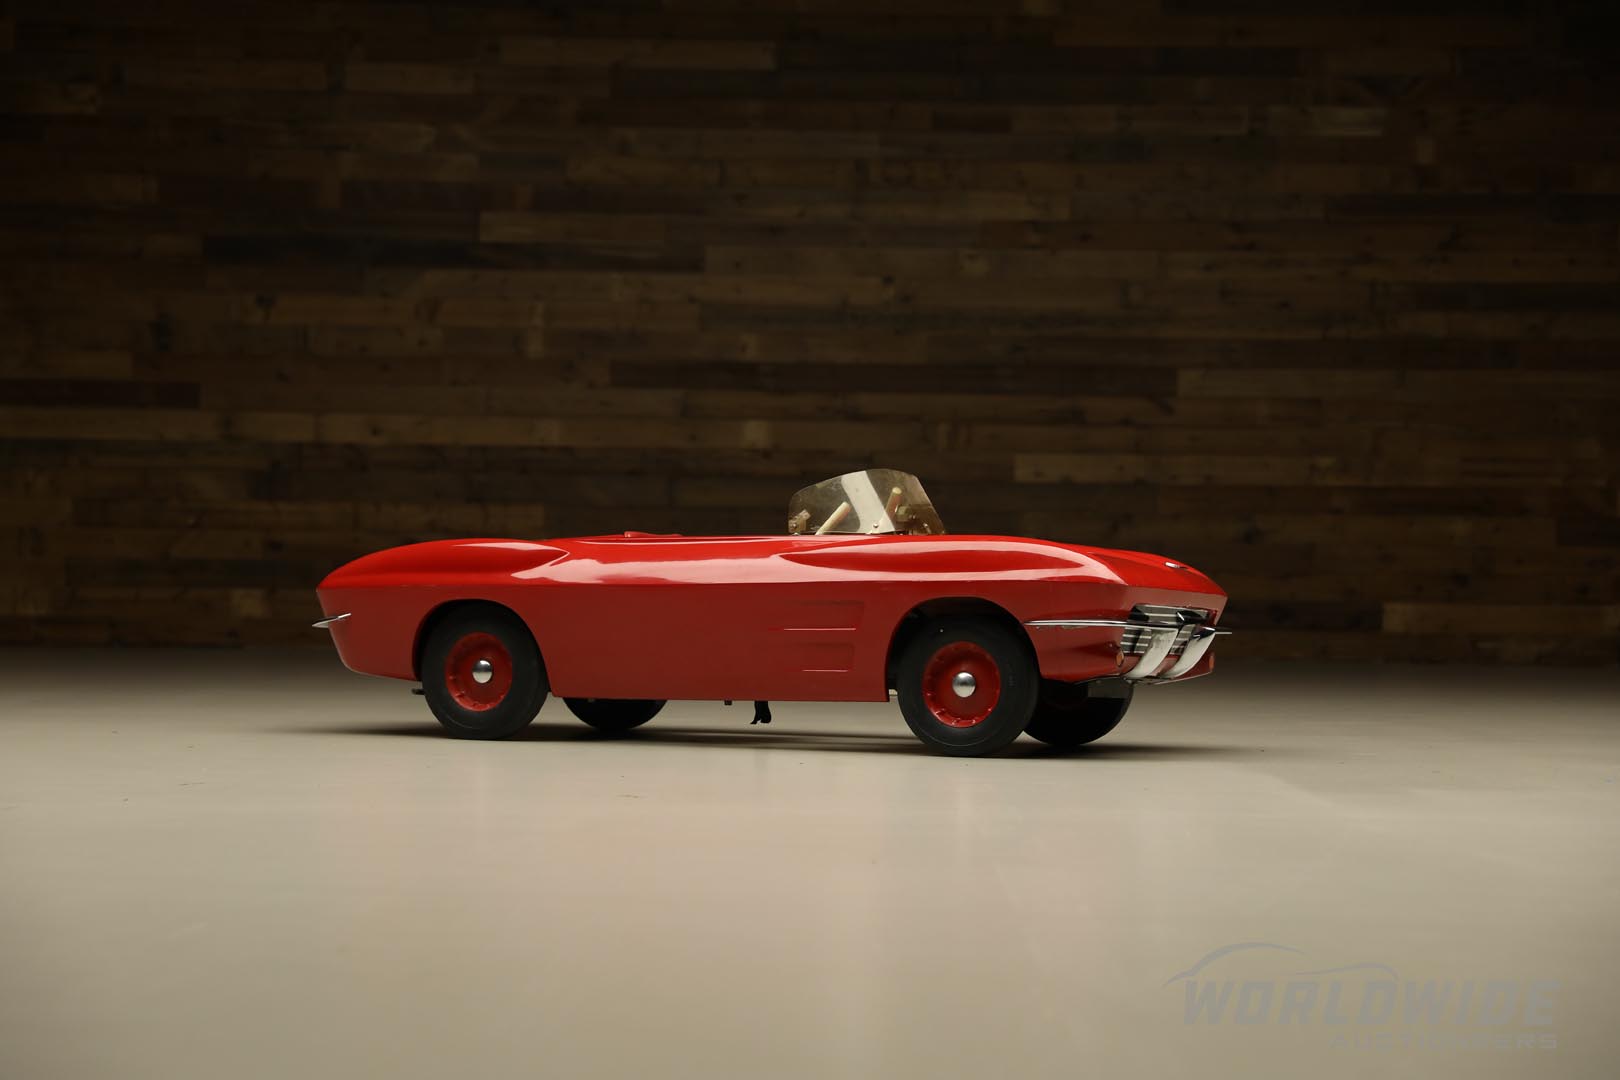  1963 Kiddie Corvette Go-Kart b y Barry Toycraft 